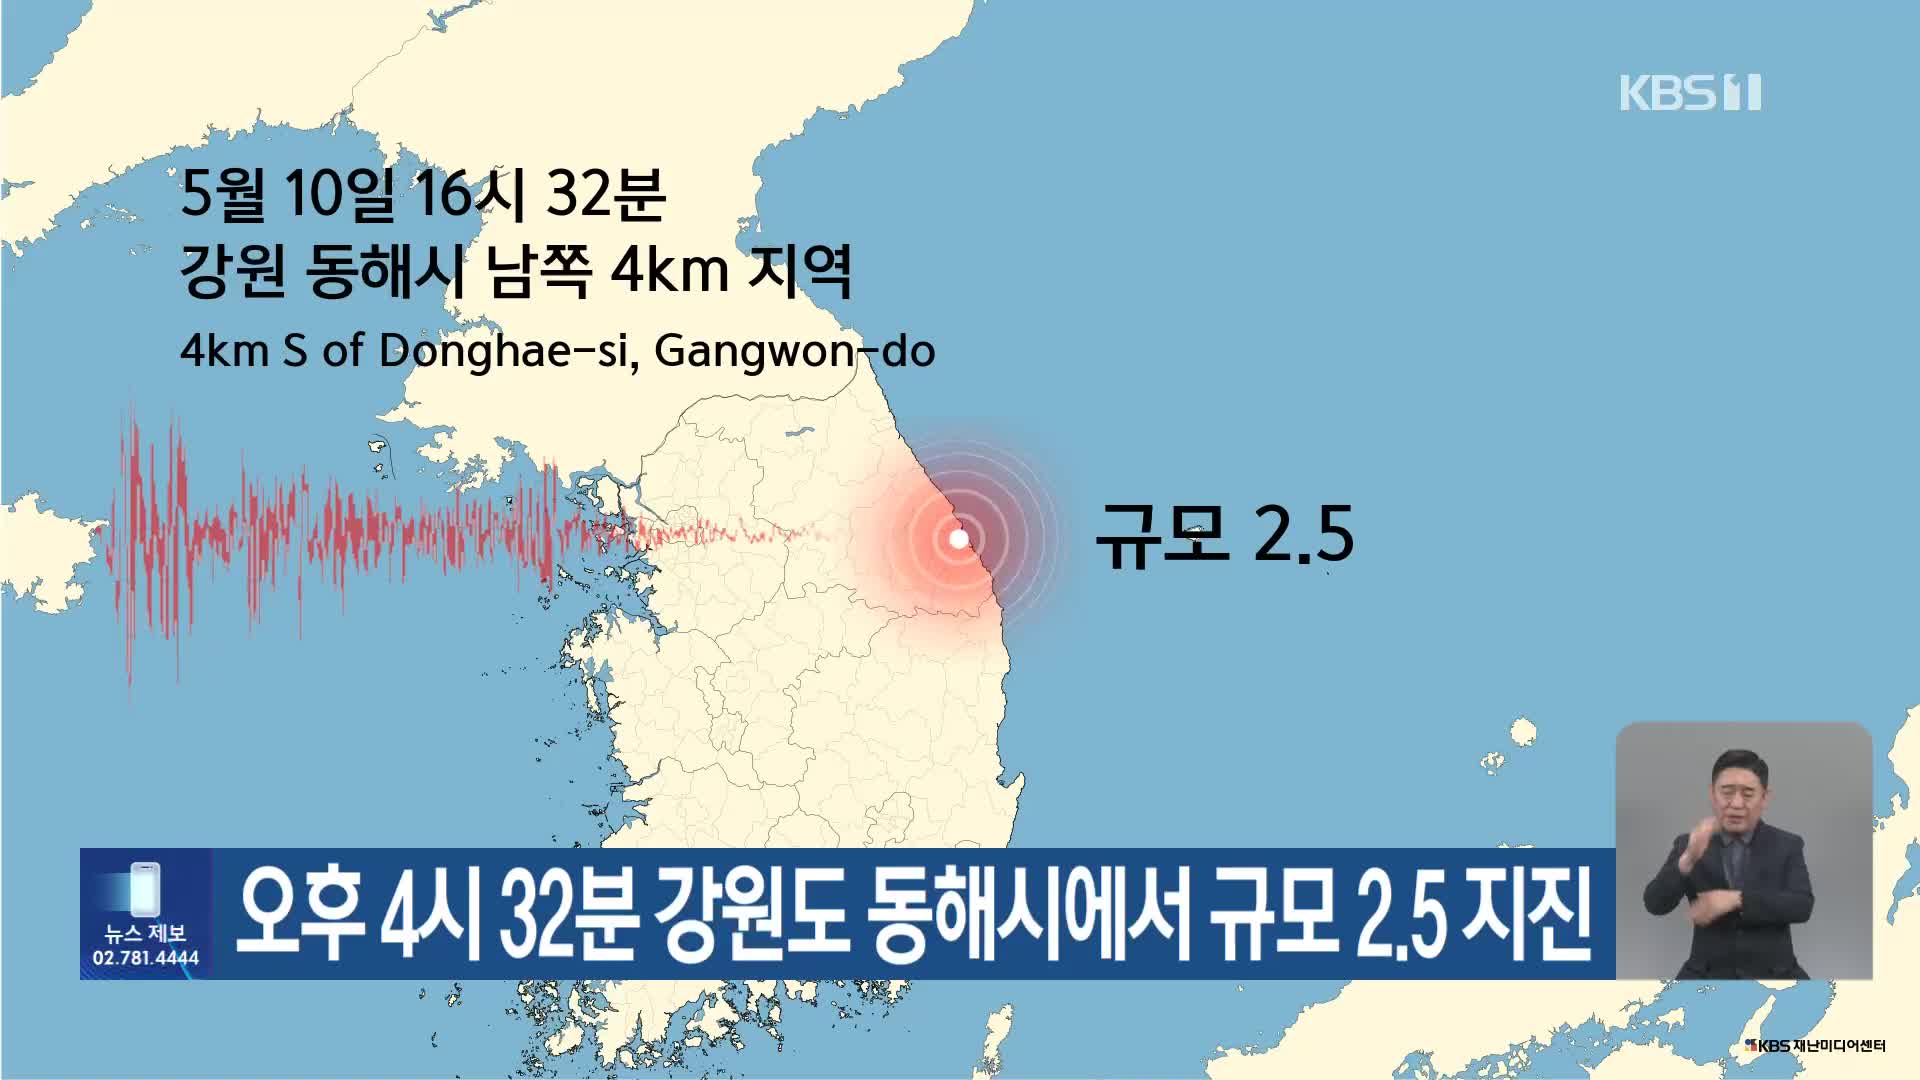 오후 4시 32분 강원도 동해시에서 규모 2.5 지진